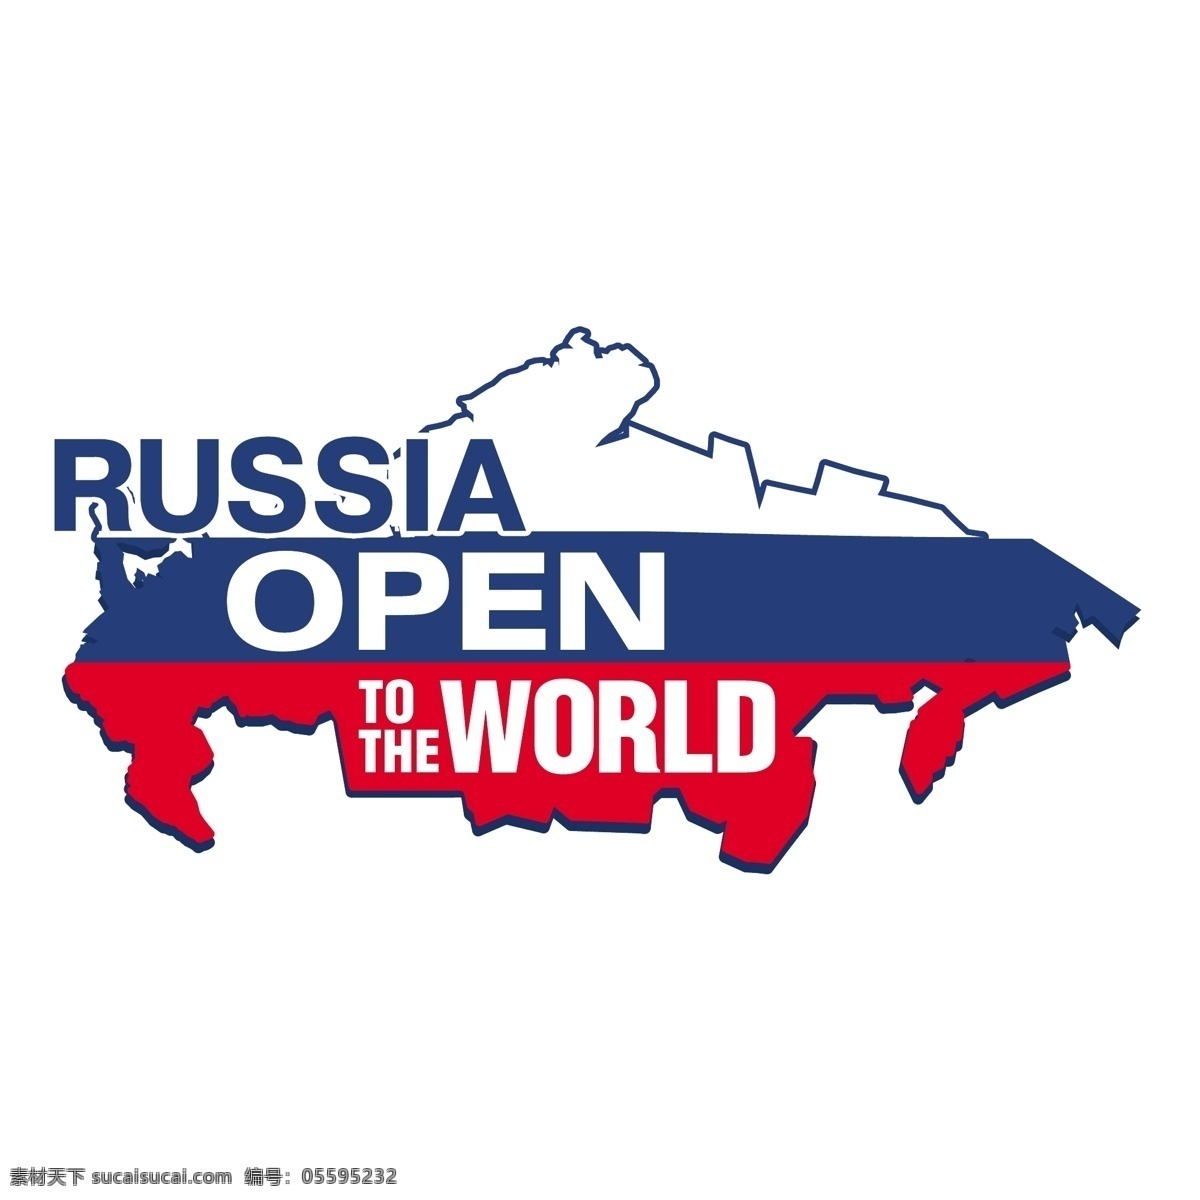 俄罗斯 世界 开放 标识 公司 免费 品牌 品牌标识 商标 矢量标志下载 免费矢量标识 矢量 psd源文件 logo设计